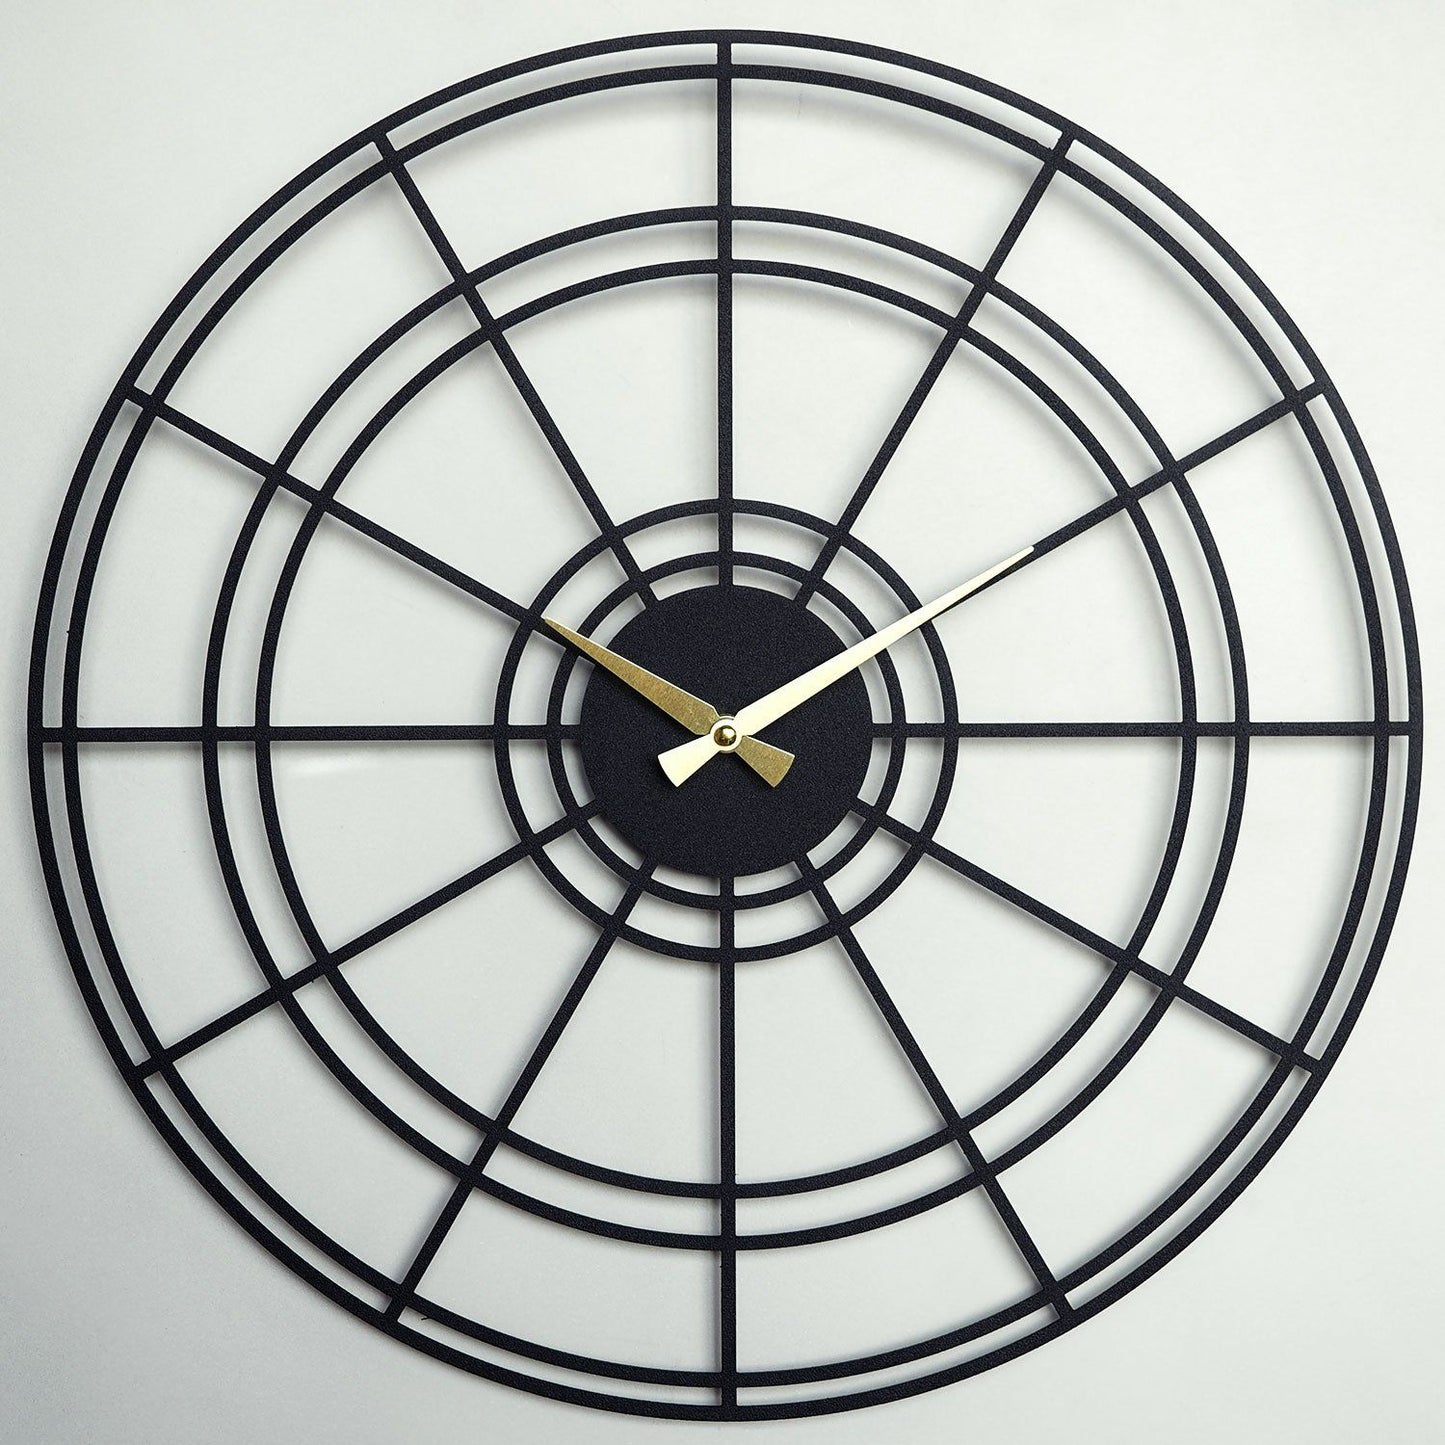 Chronometri metal vægur - APS026 - Dekorativt metal vægur